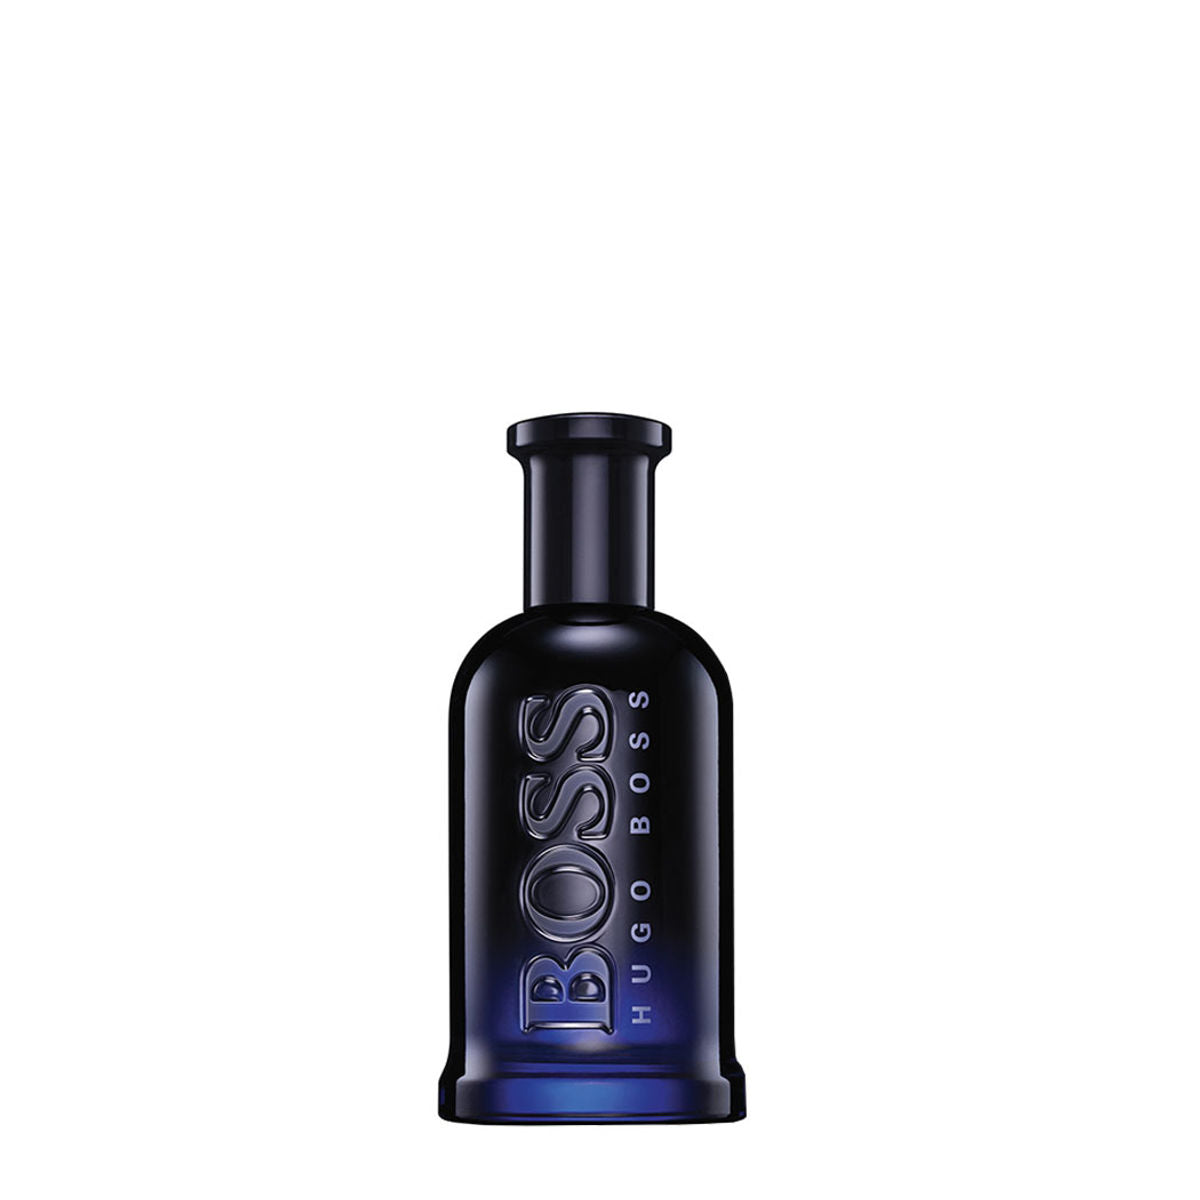 BOSS Bottled Night Eau De Toilette for Men (100 ml) Hugo Boss